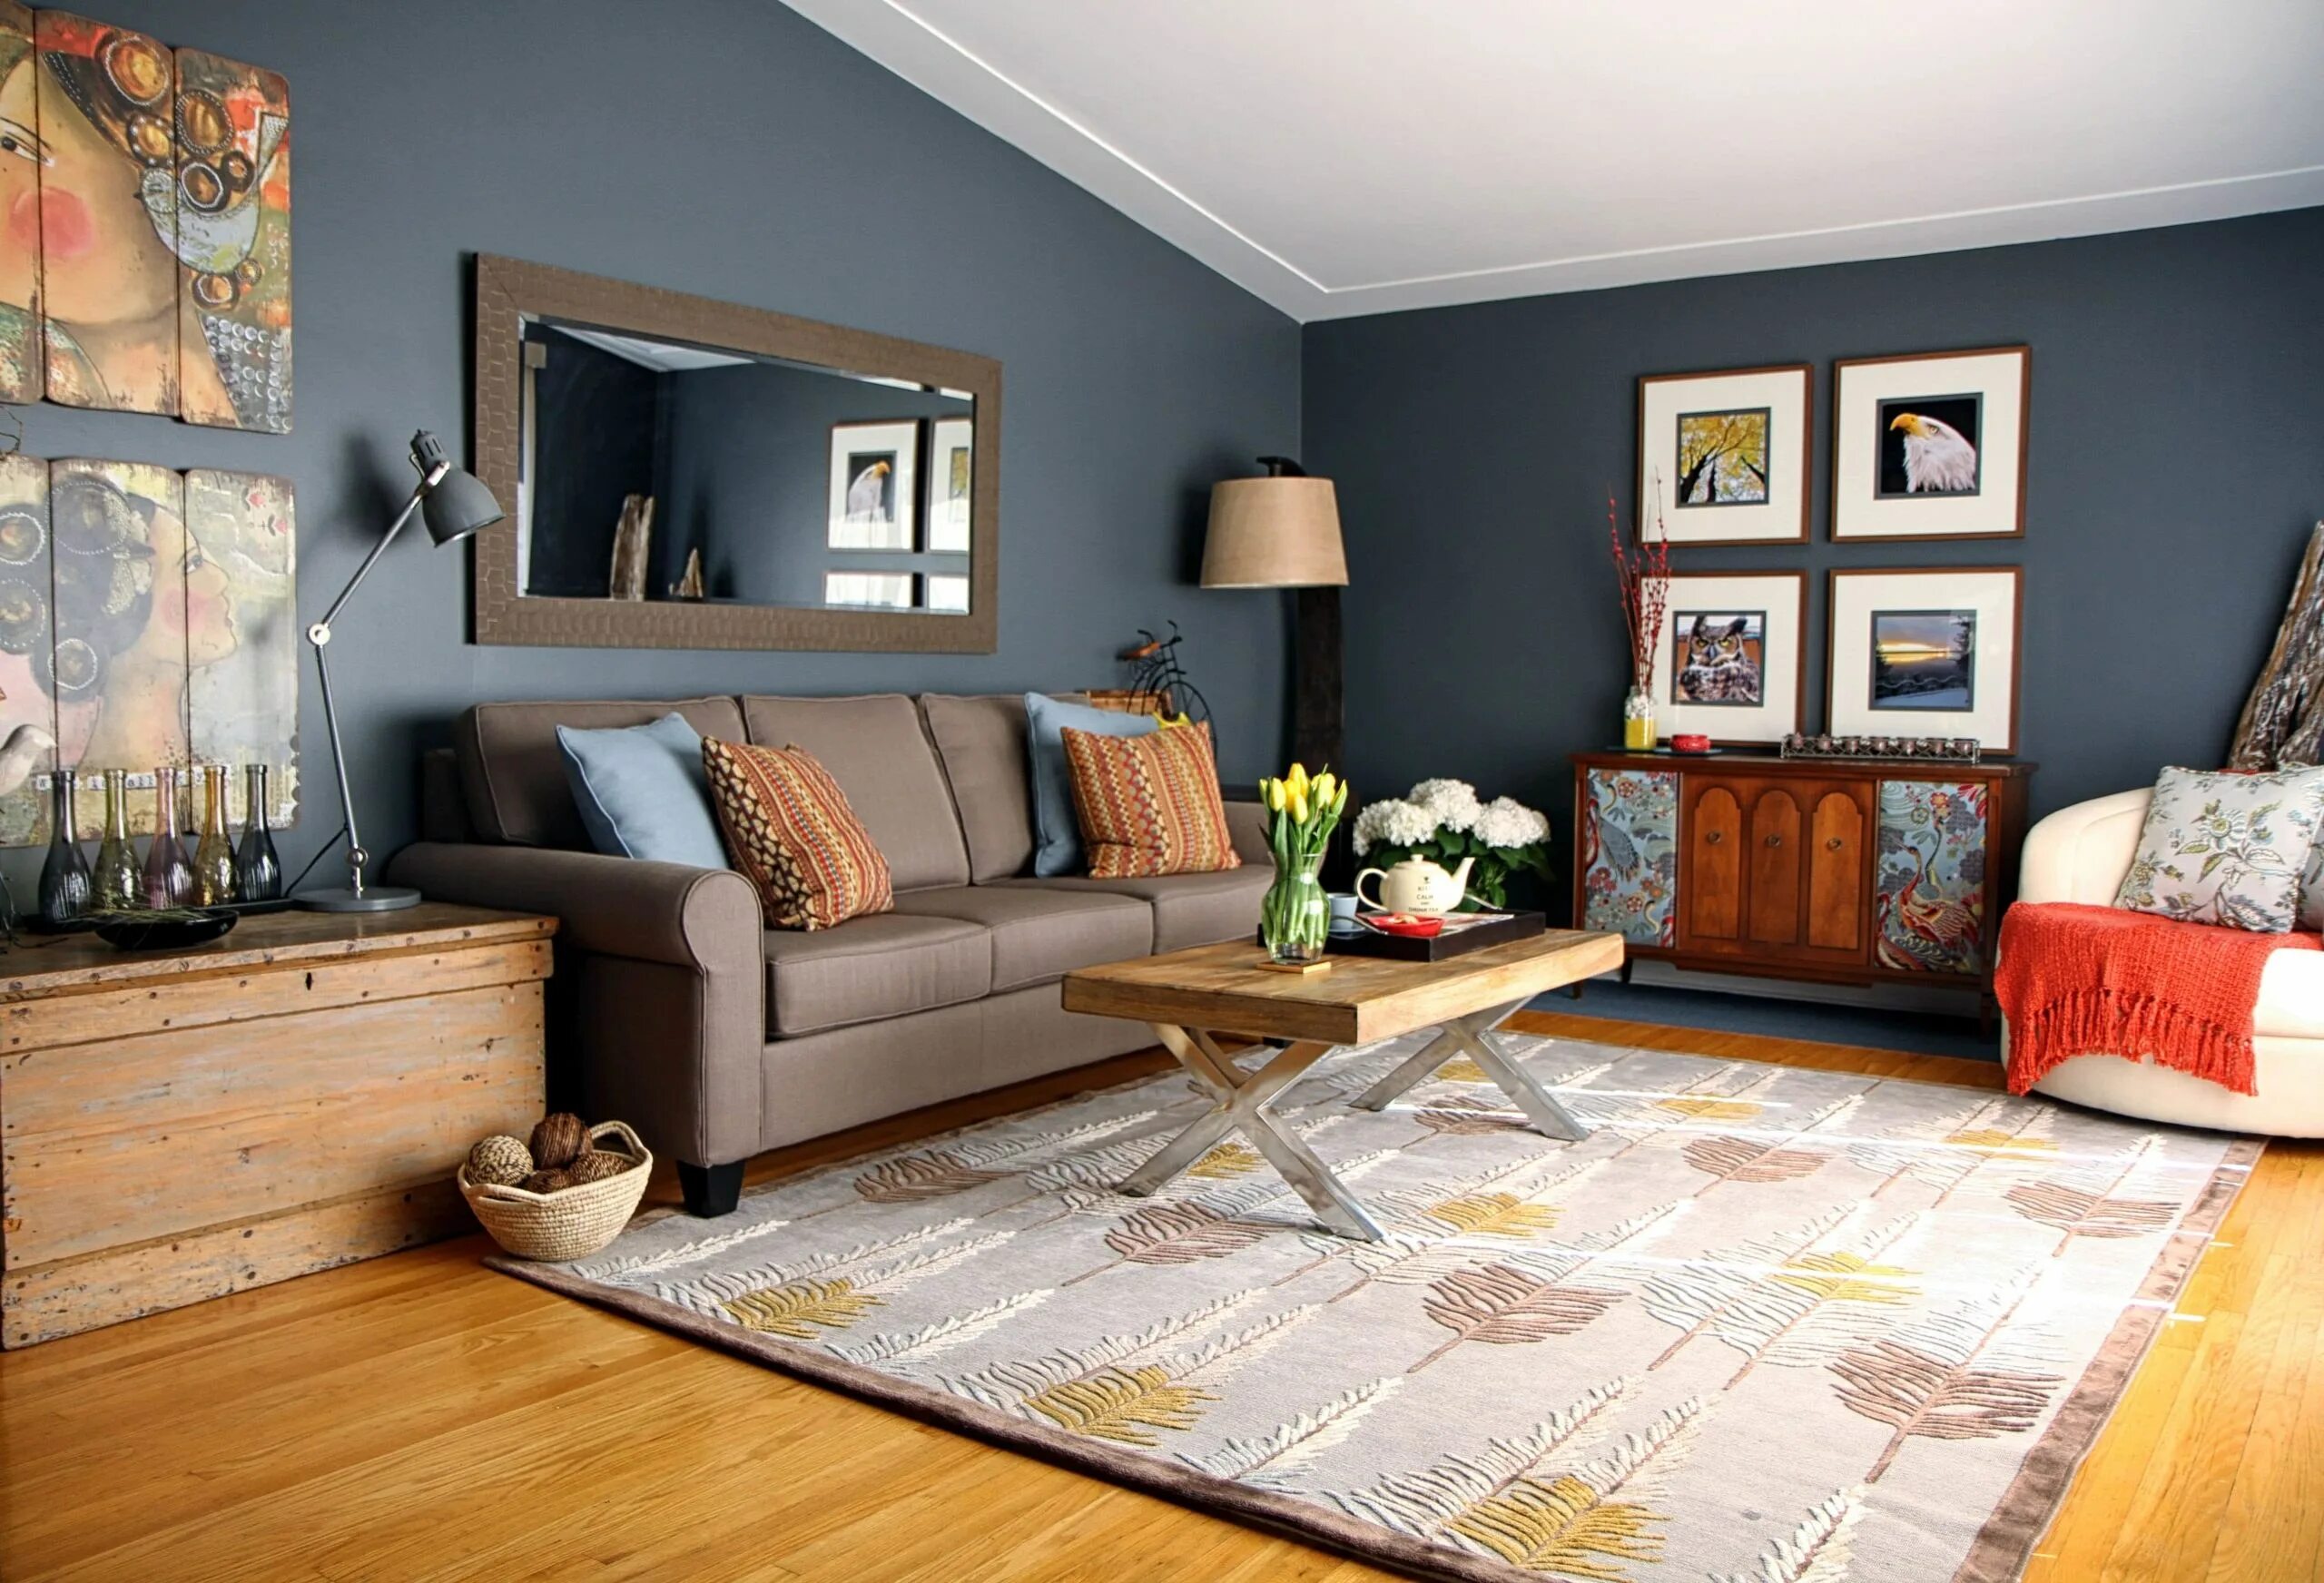 This is my living room. Акцентная стена в гостиной. Акцентная стена в интерьере. Лучшие сочетания цвета стен в интерьере. Акцентная стена в интерьере краска.